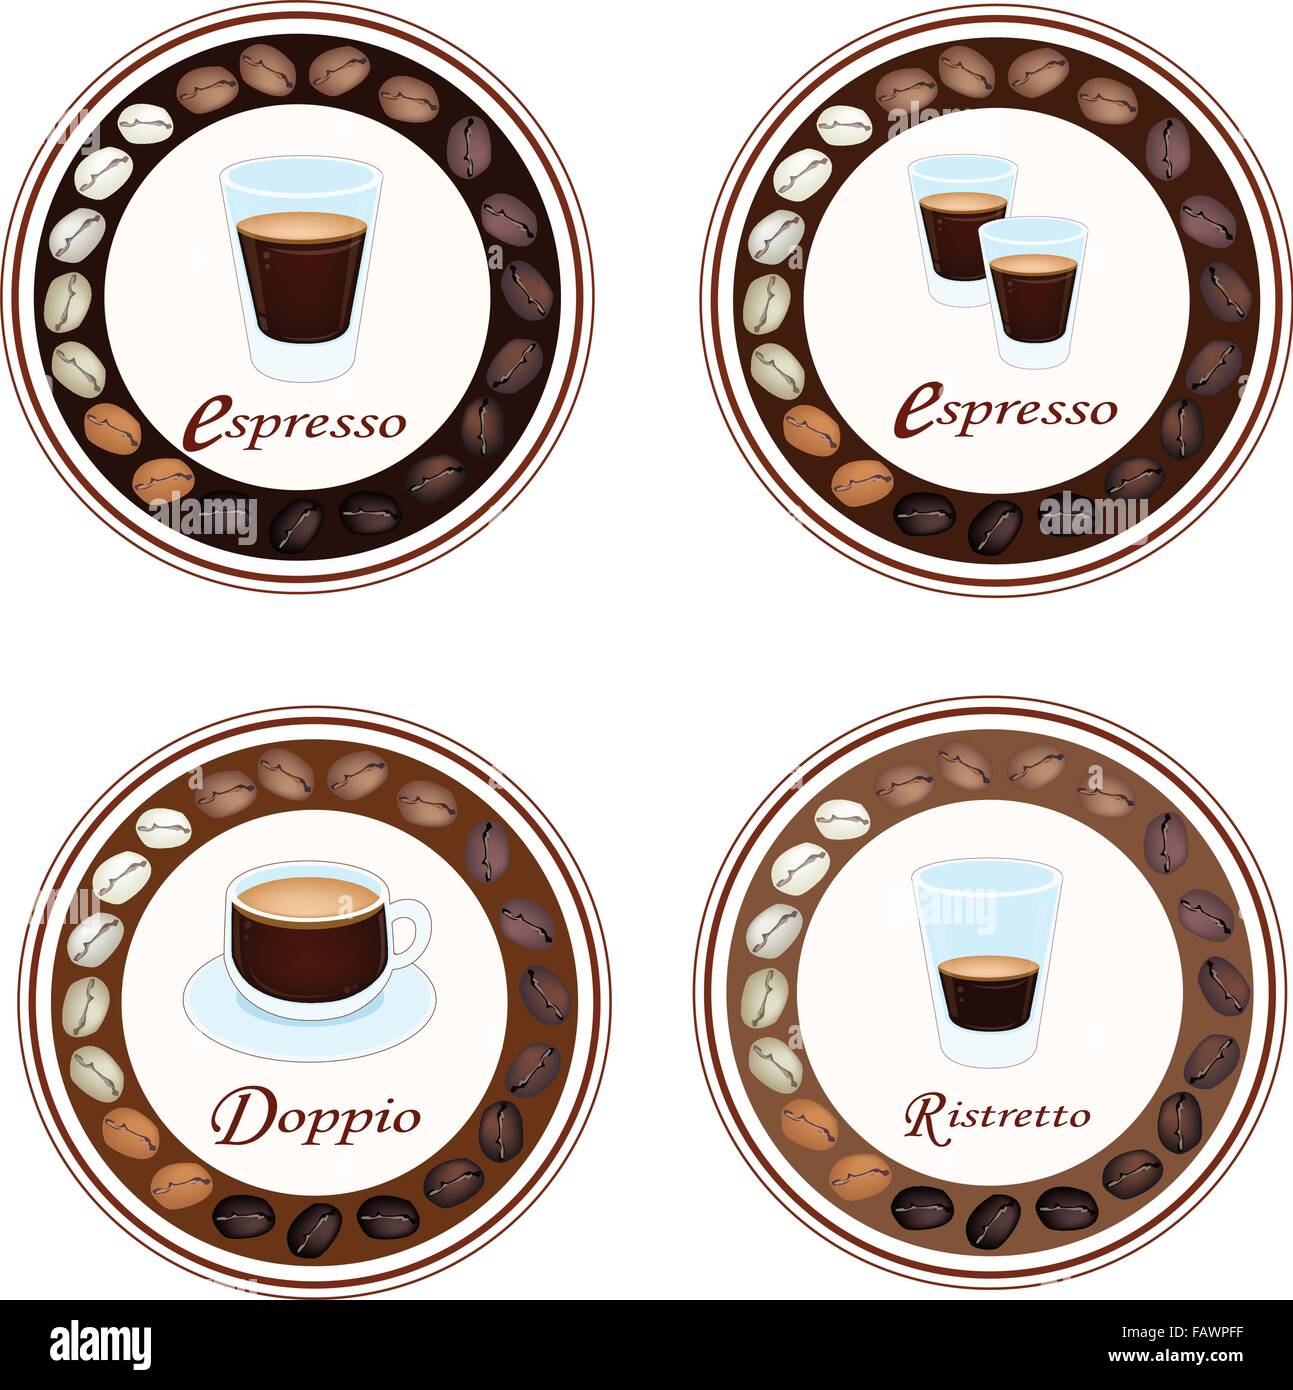 juego de tazas de café tipo de café espresso, dopio, ristretto, macchiato  3478407 Vector en Vecteezy